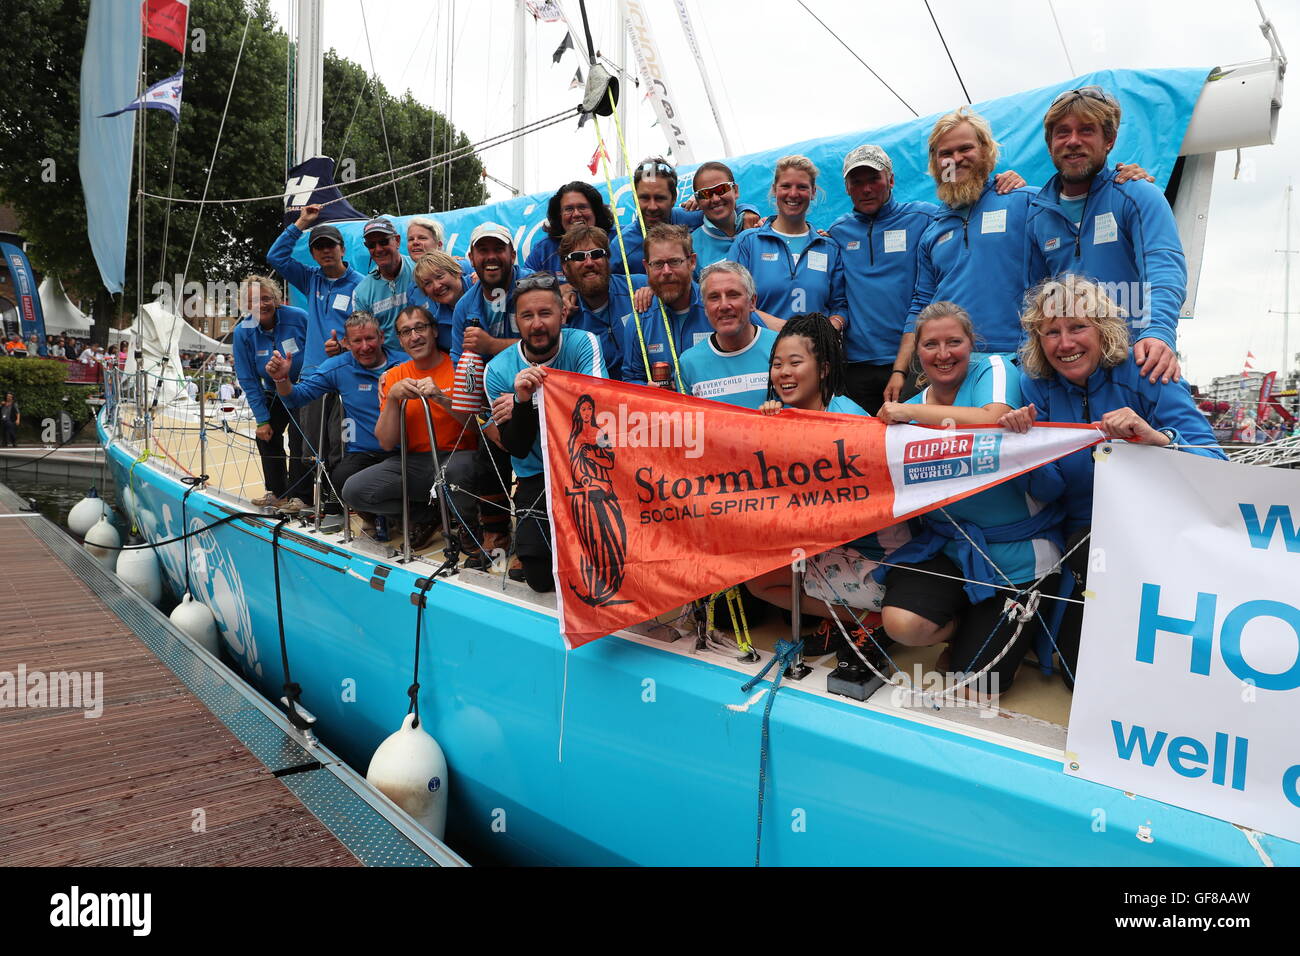 Team-Unicef erhalten den Social Spirit Award in der Endphase der Clipper Round the World Yacht Race am St Katharine Docks, London. Stockfoto